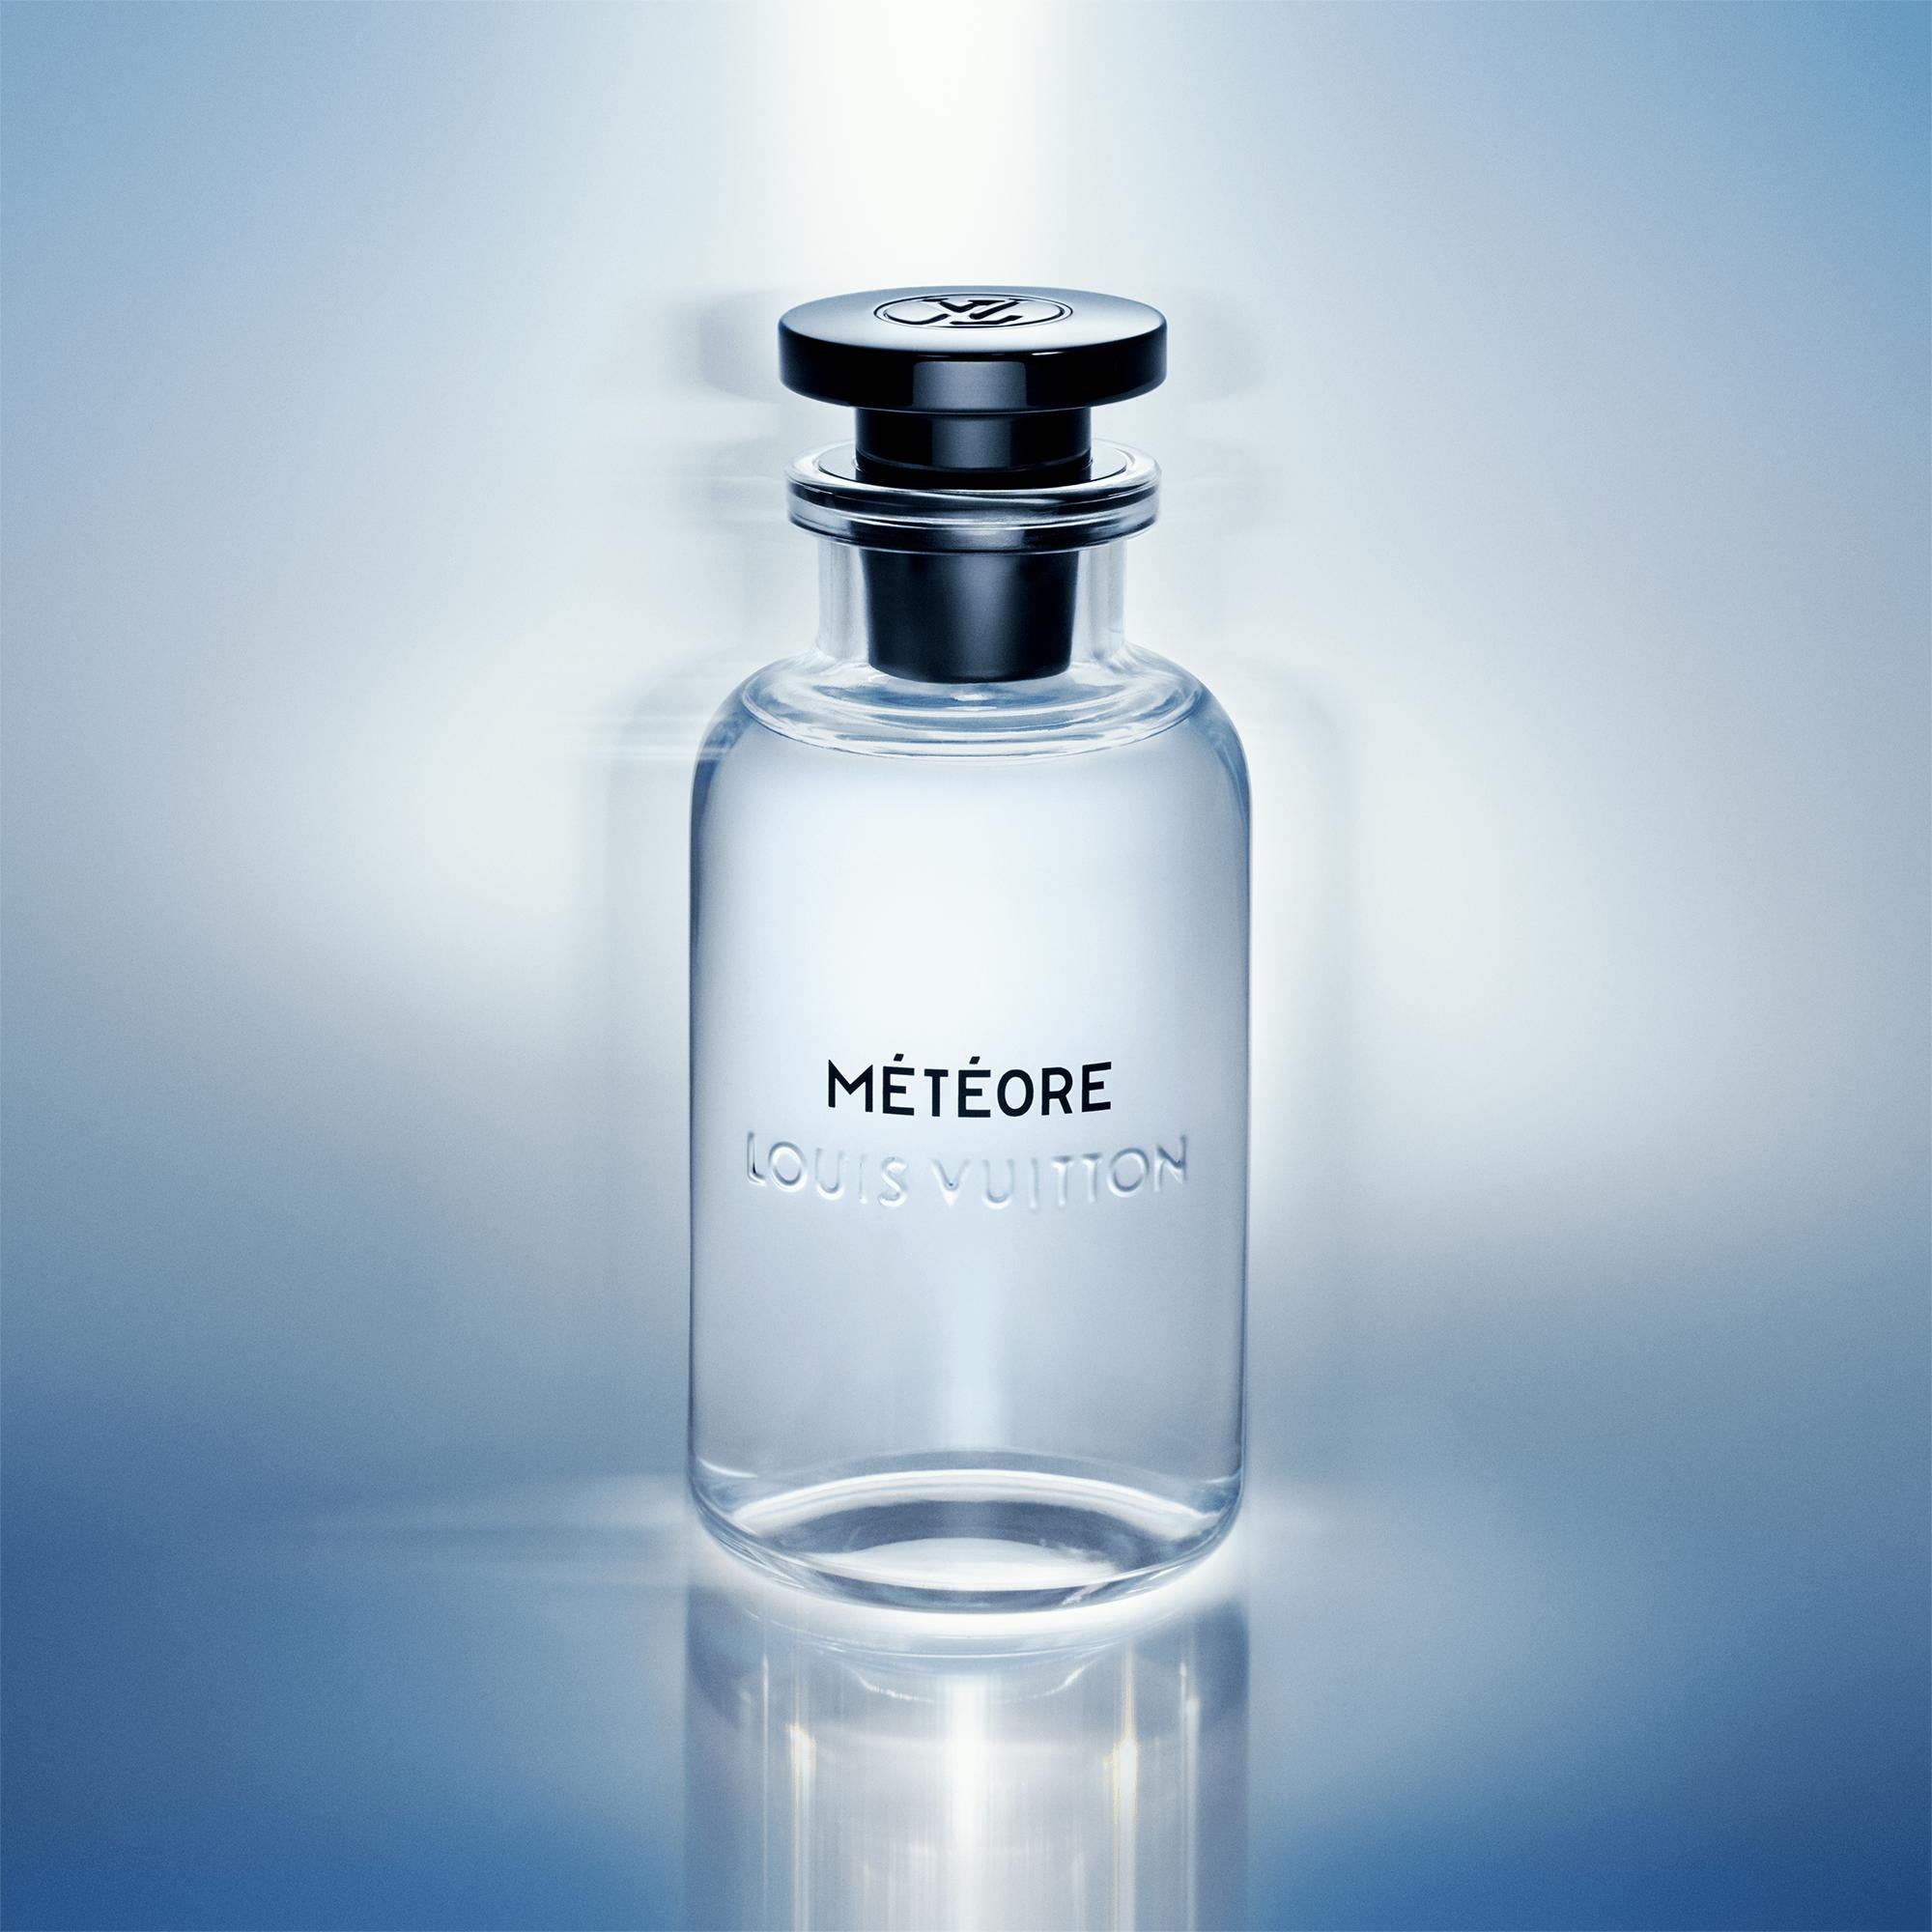 Louis Vuitton Fleur Du Desert Eau De Parfum 3.4oz / 100ml